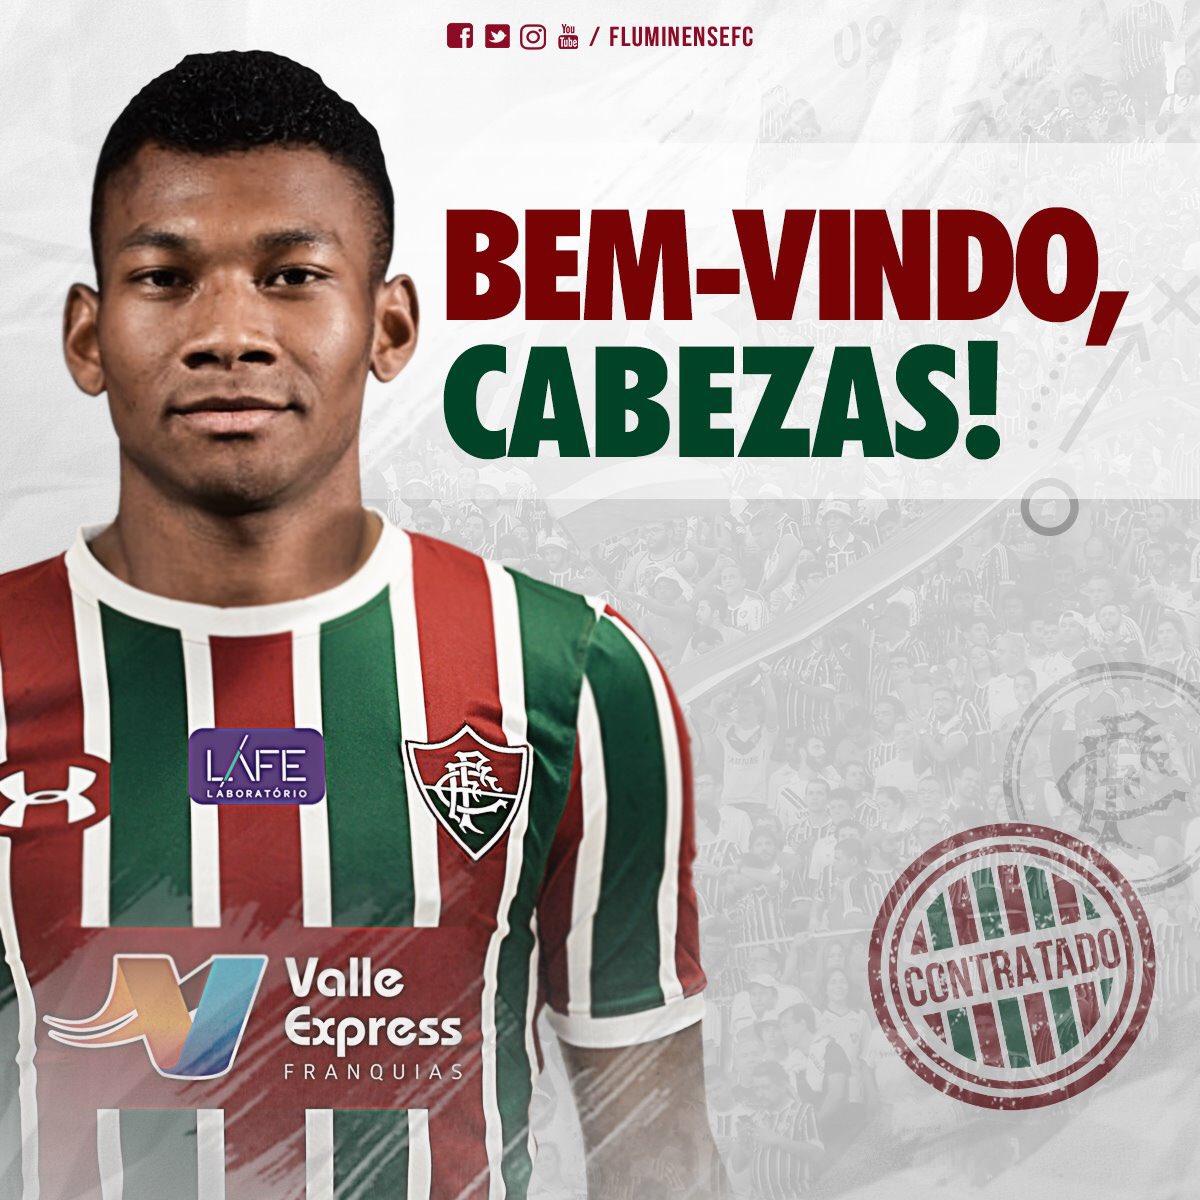 Cabezas en Fluminense